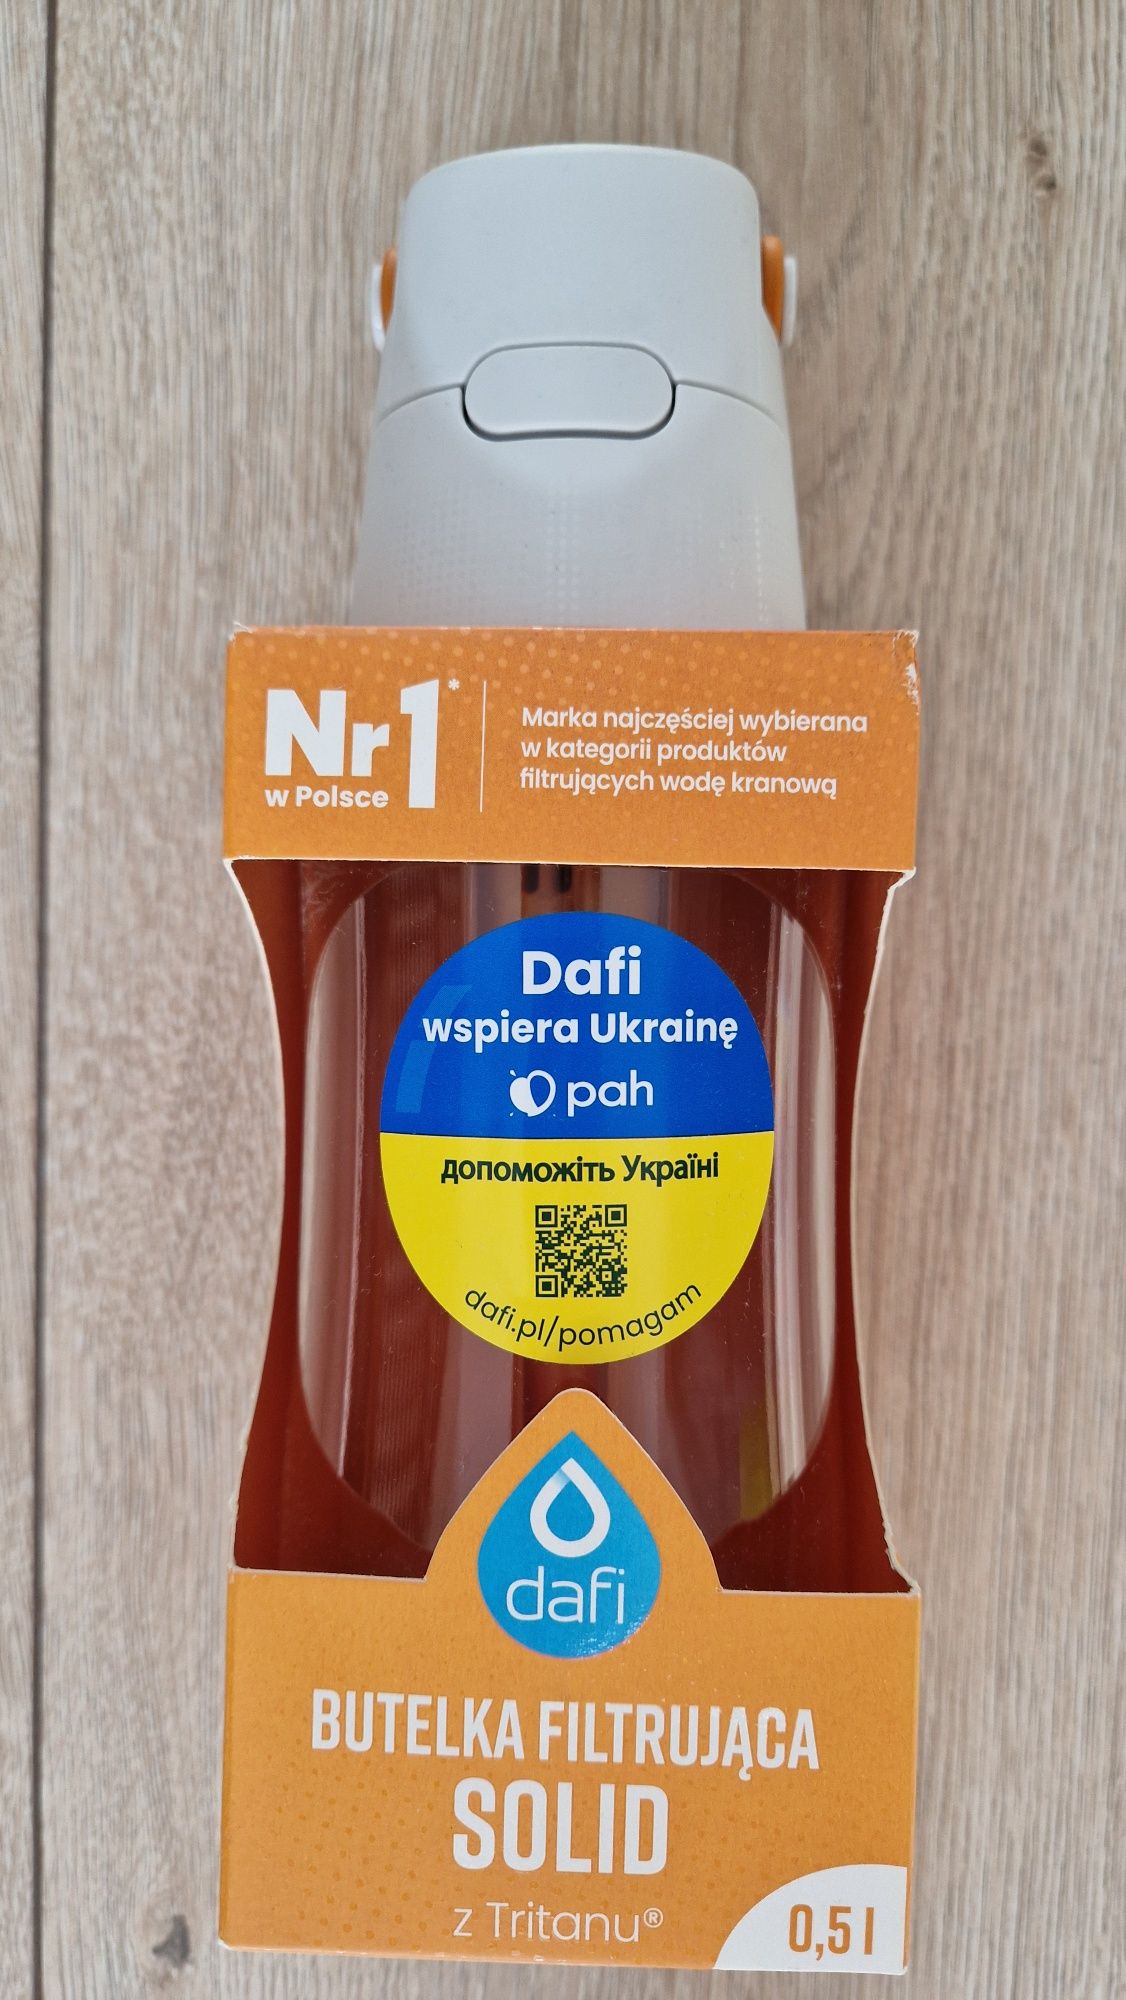 Dafi SOLID butelka filtrująca 0,5l